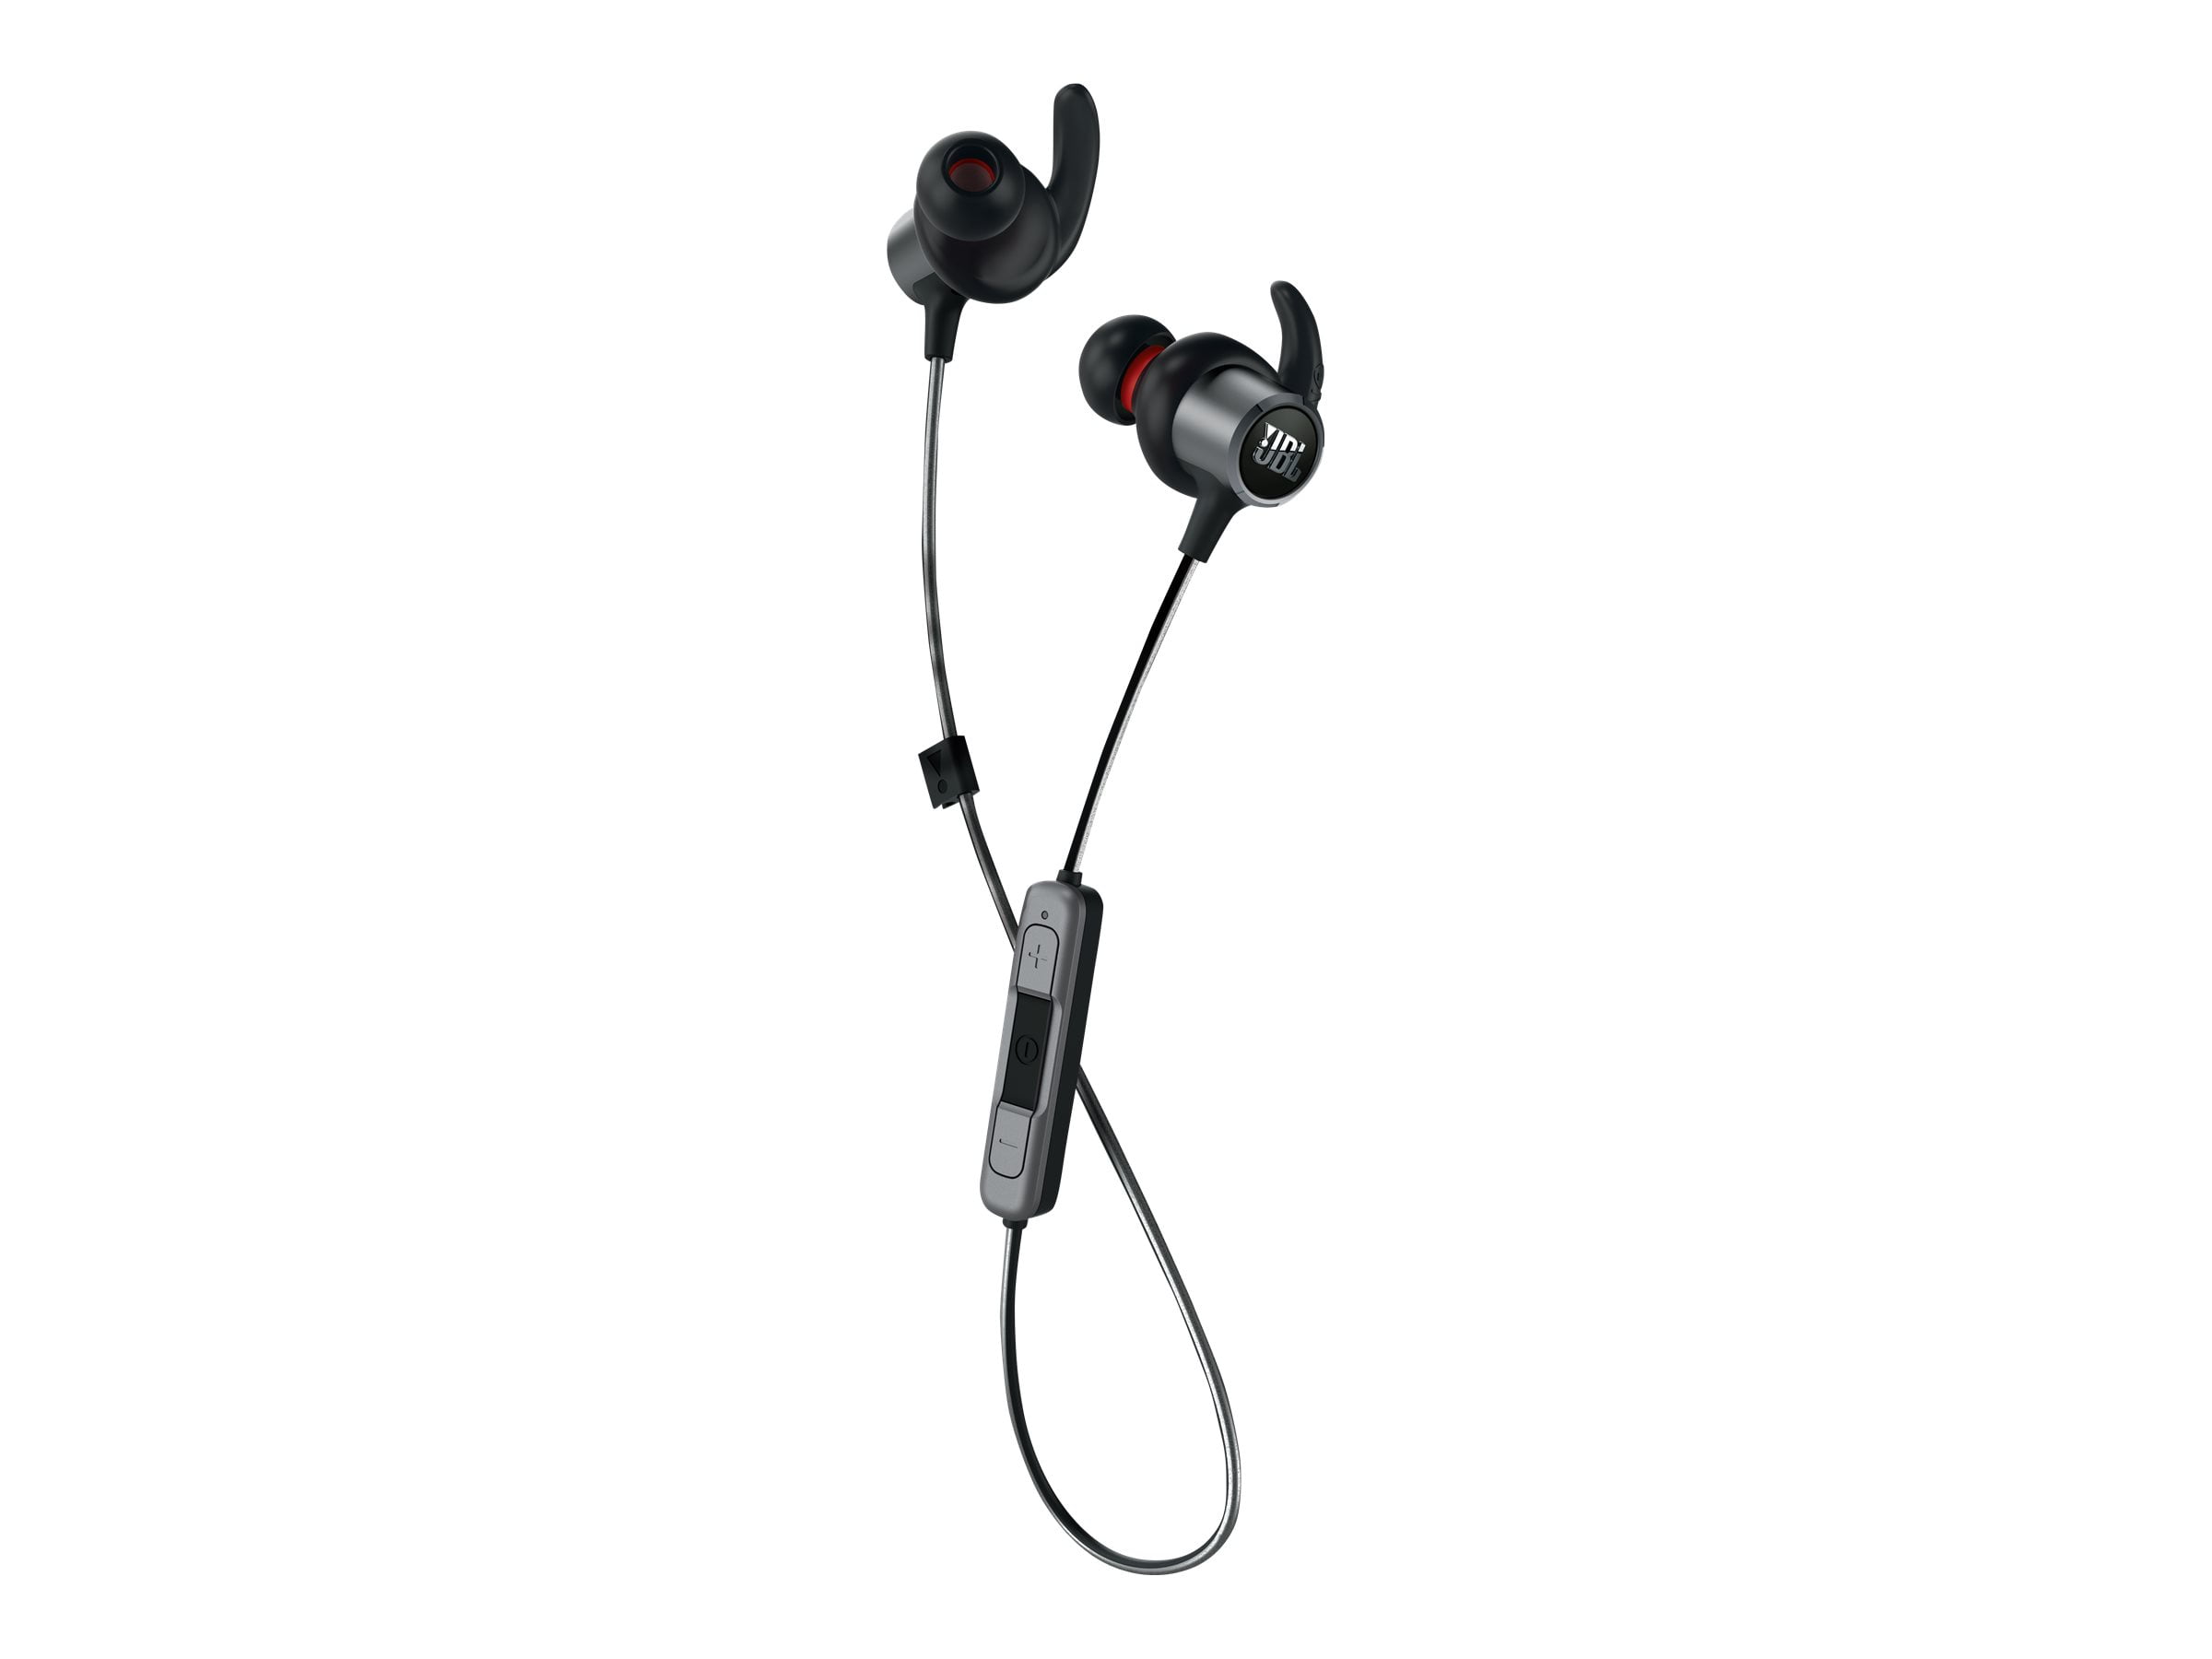 Pump Udstyr ukuelige JBL Reflect Mini 2 - Earphones with mic - in-ear - Bluetooth - wireless -  black - Walmart.com